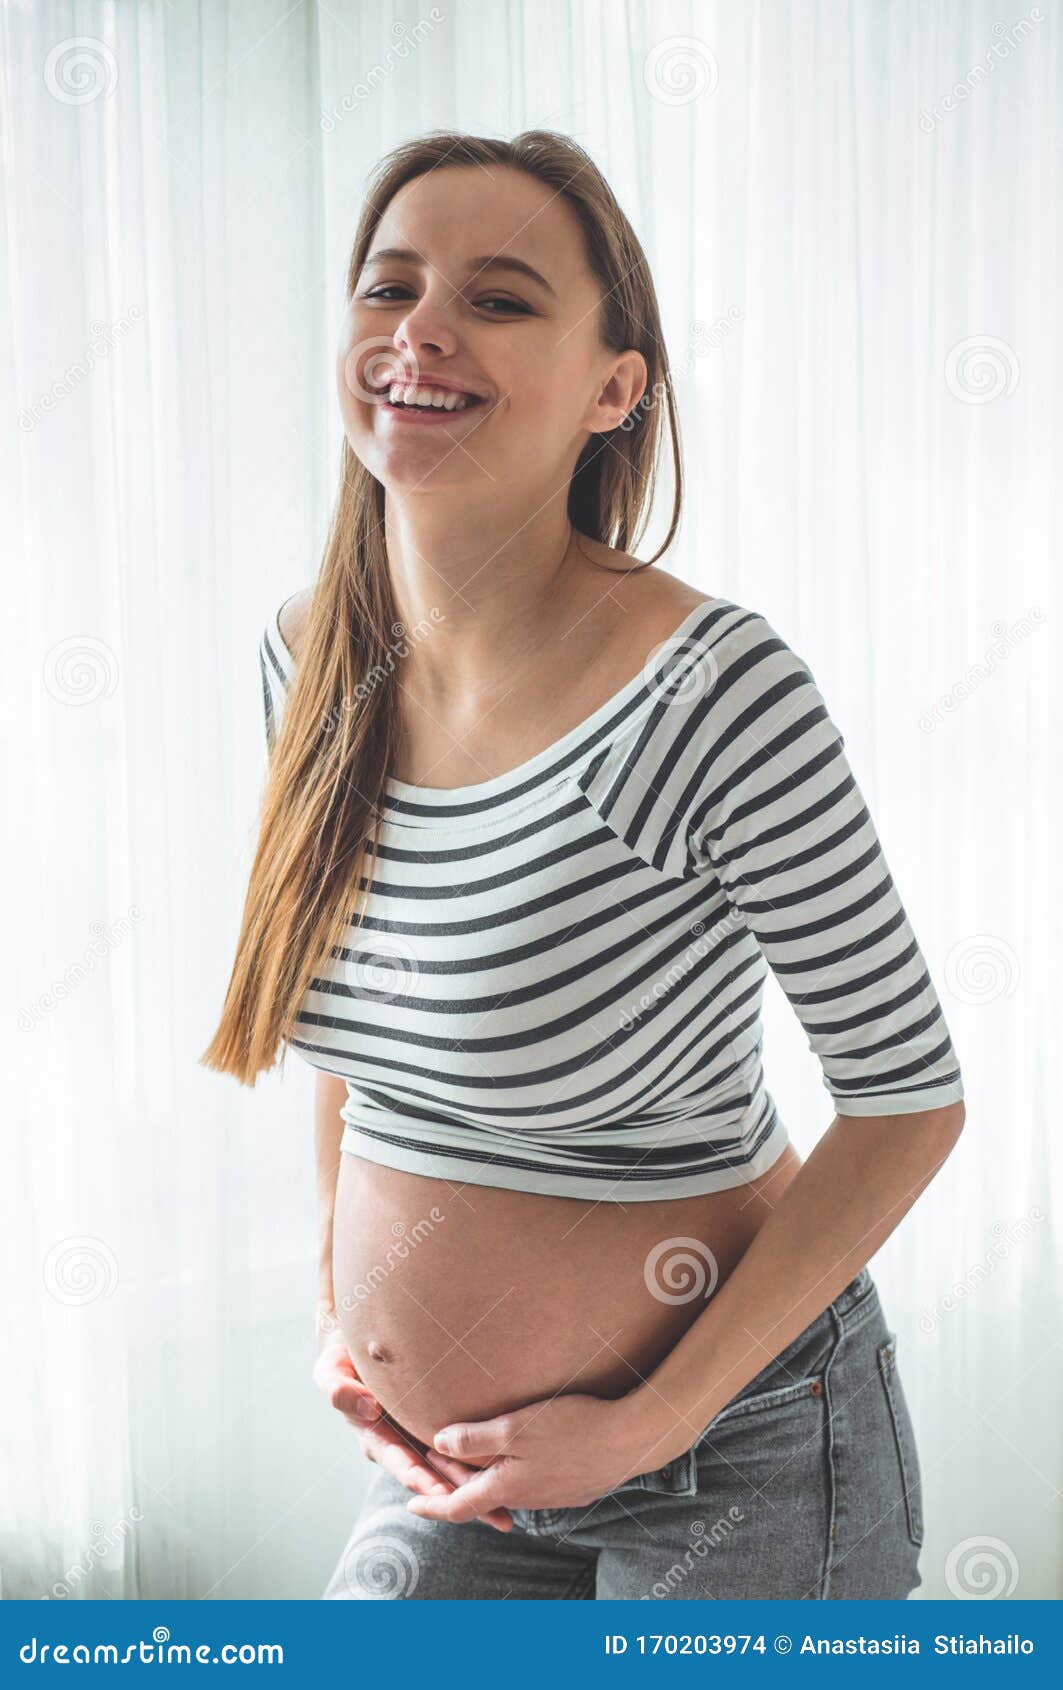 Giant Pregnant